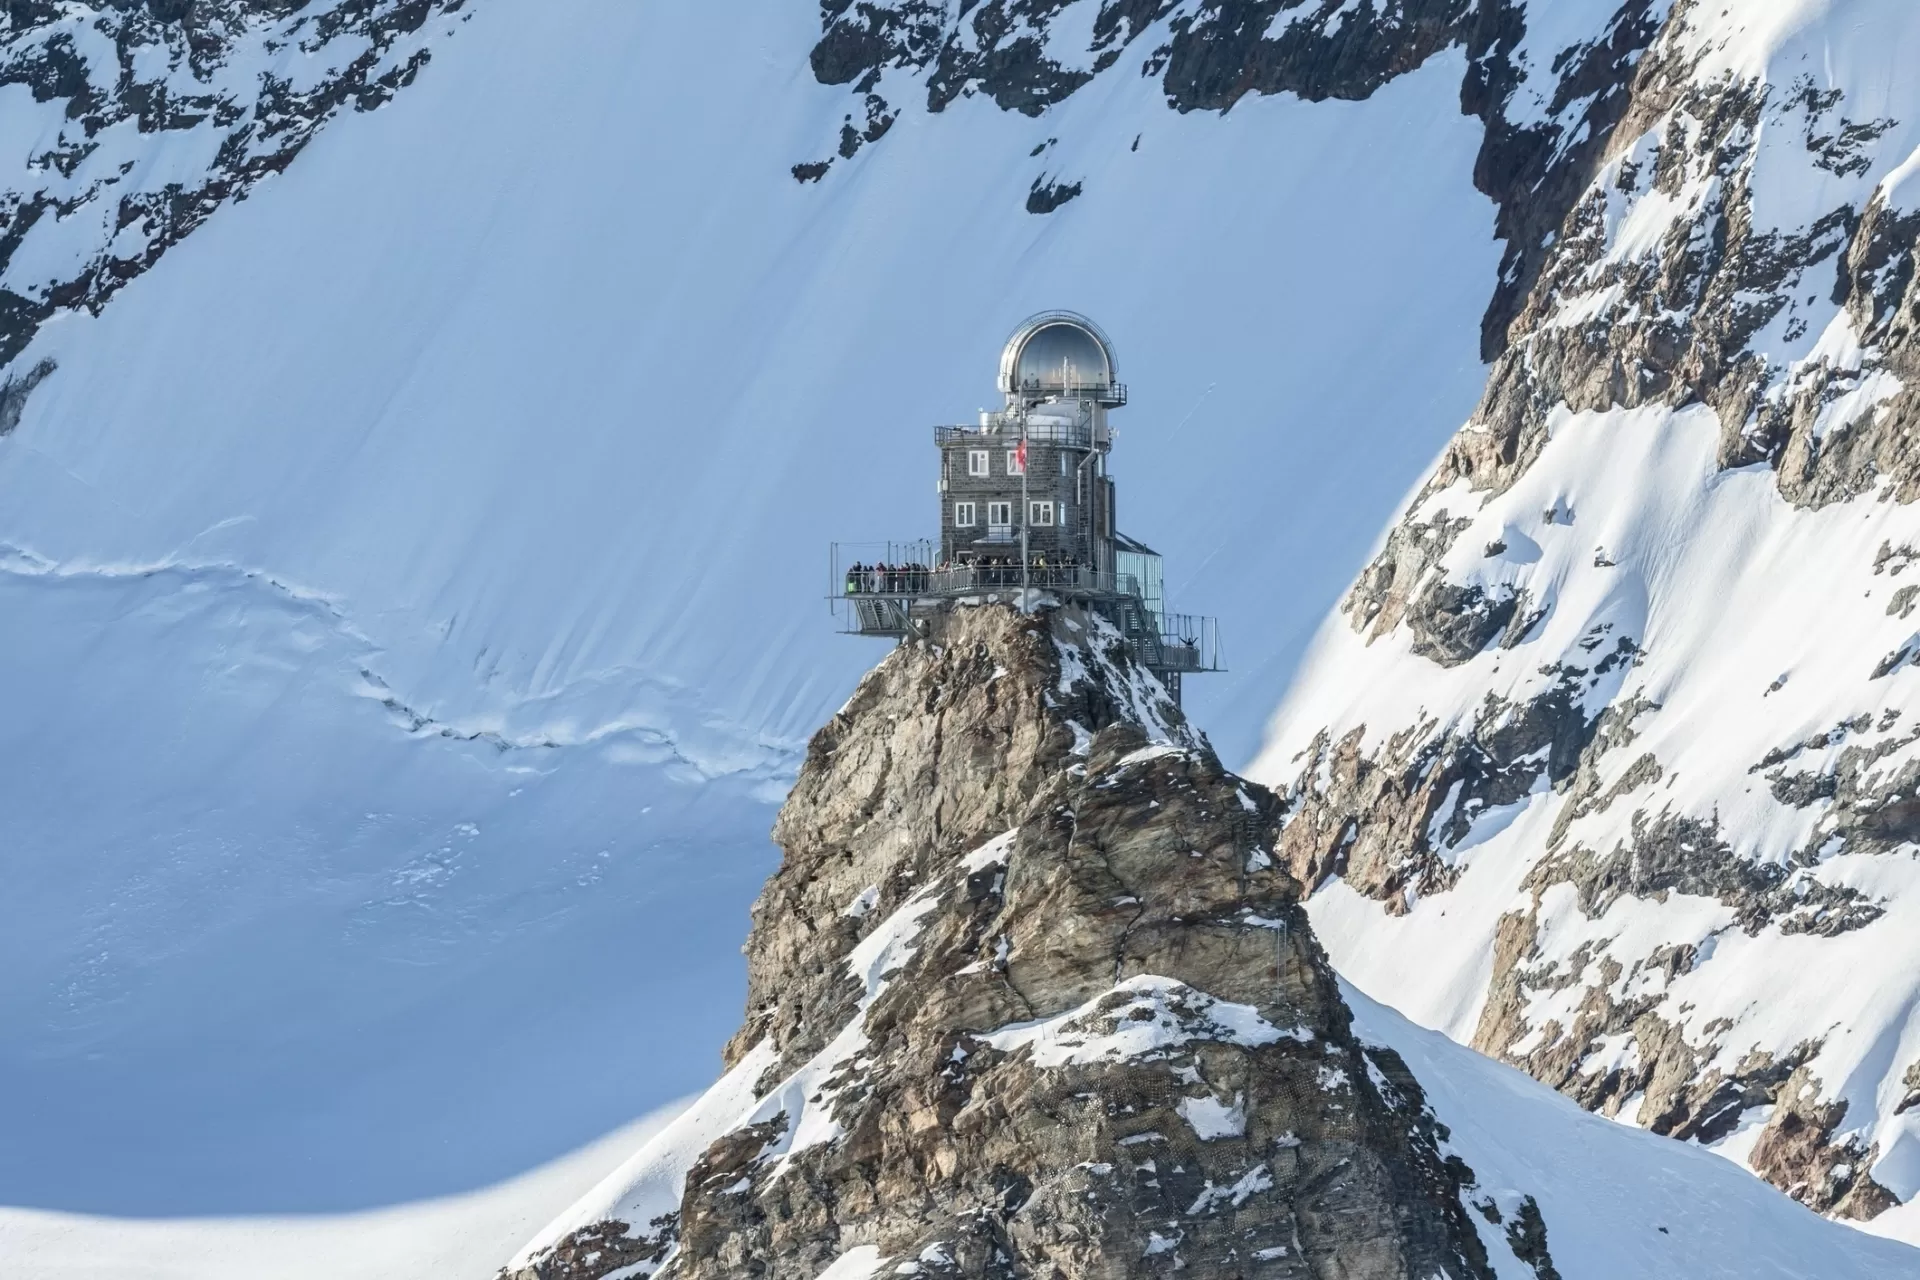 Estação de Jungfraujoch, que também conta com um dos mais altos observatórios do mundo, em Fieschertal, Valais, na Suíça - VogelSP/Getty Images/iStockphoto